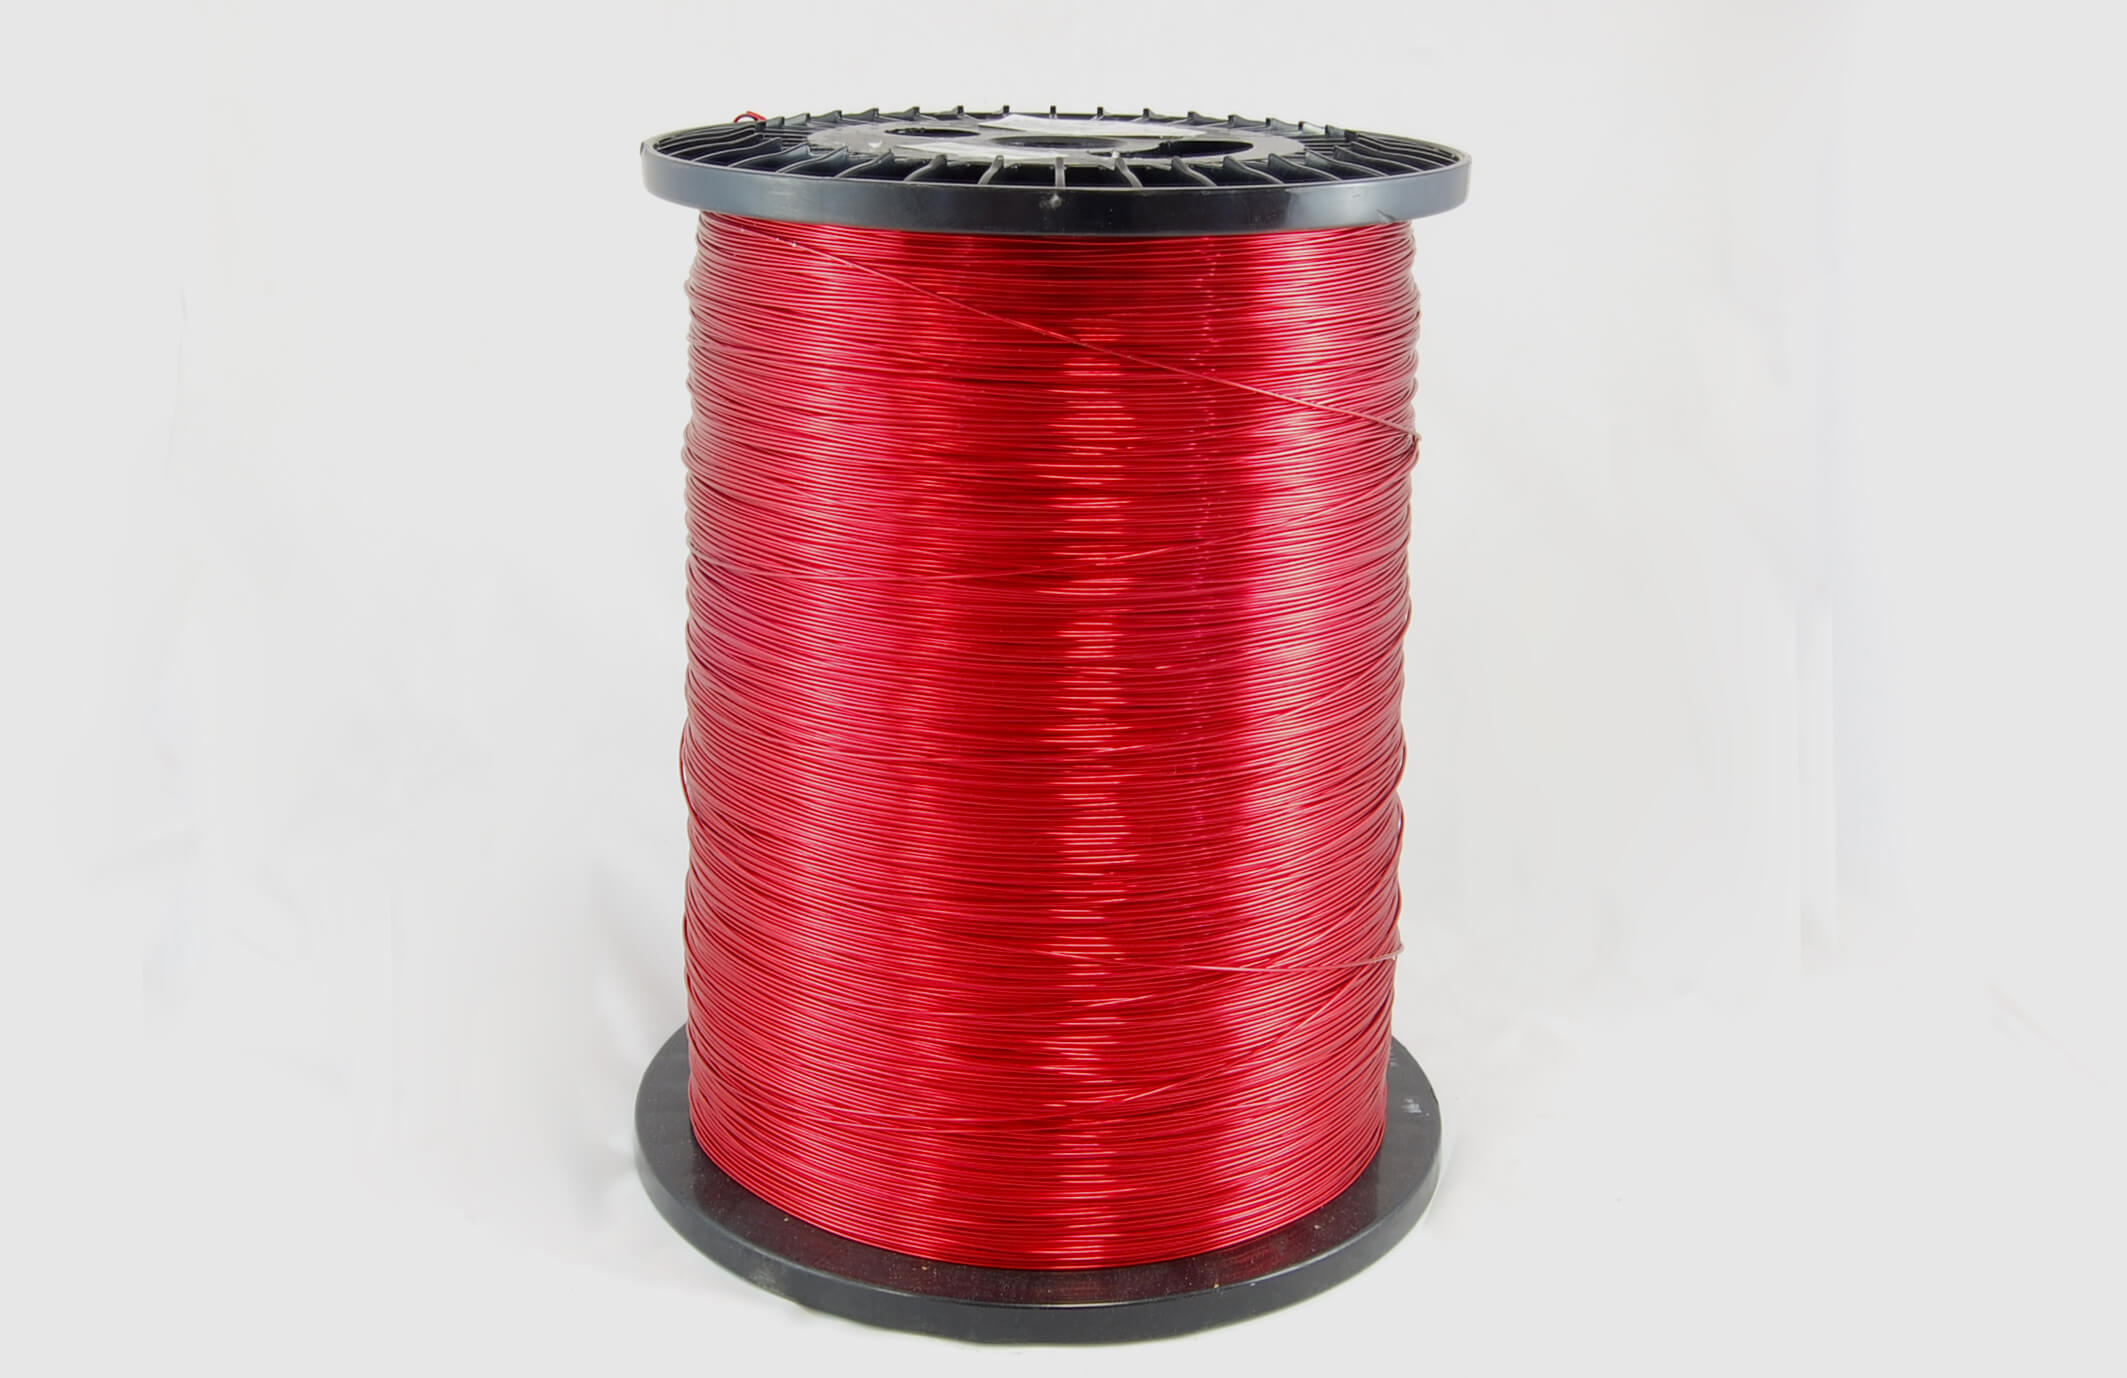 #14 Single Nysol  Round SNSR MW 80 Copper Magnet Wire 155°C, red, 85 LB box (average wght.)